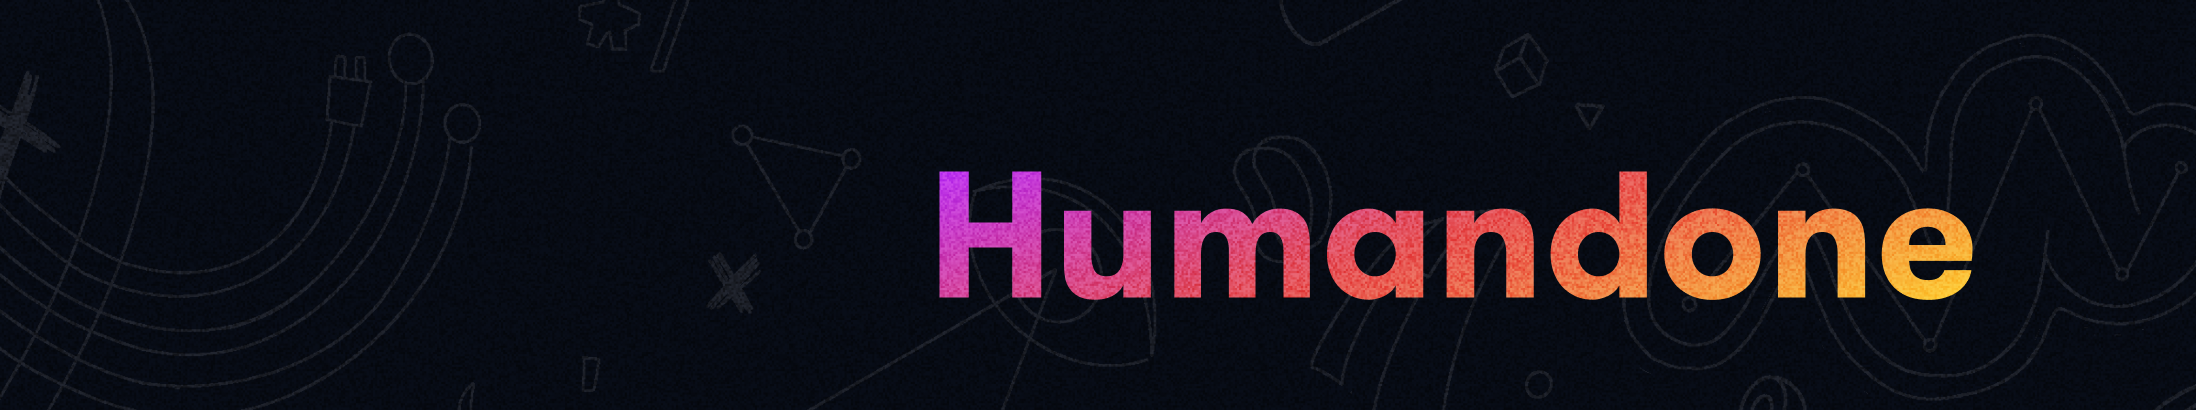 Banner de perfil de Humandone Team